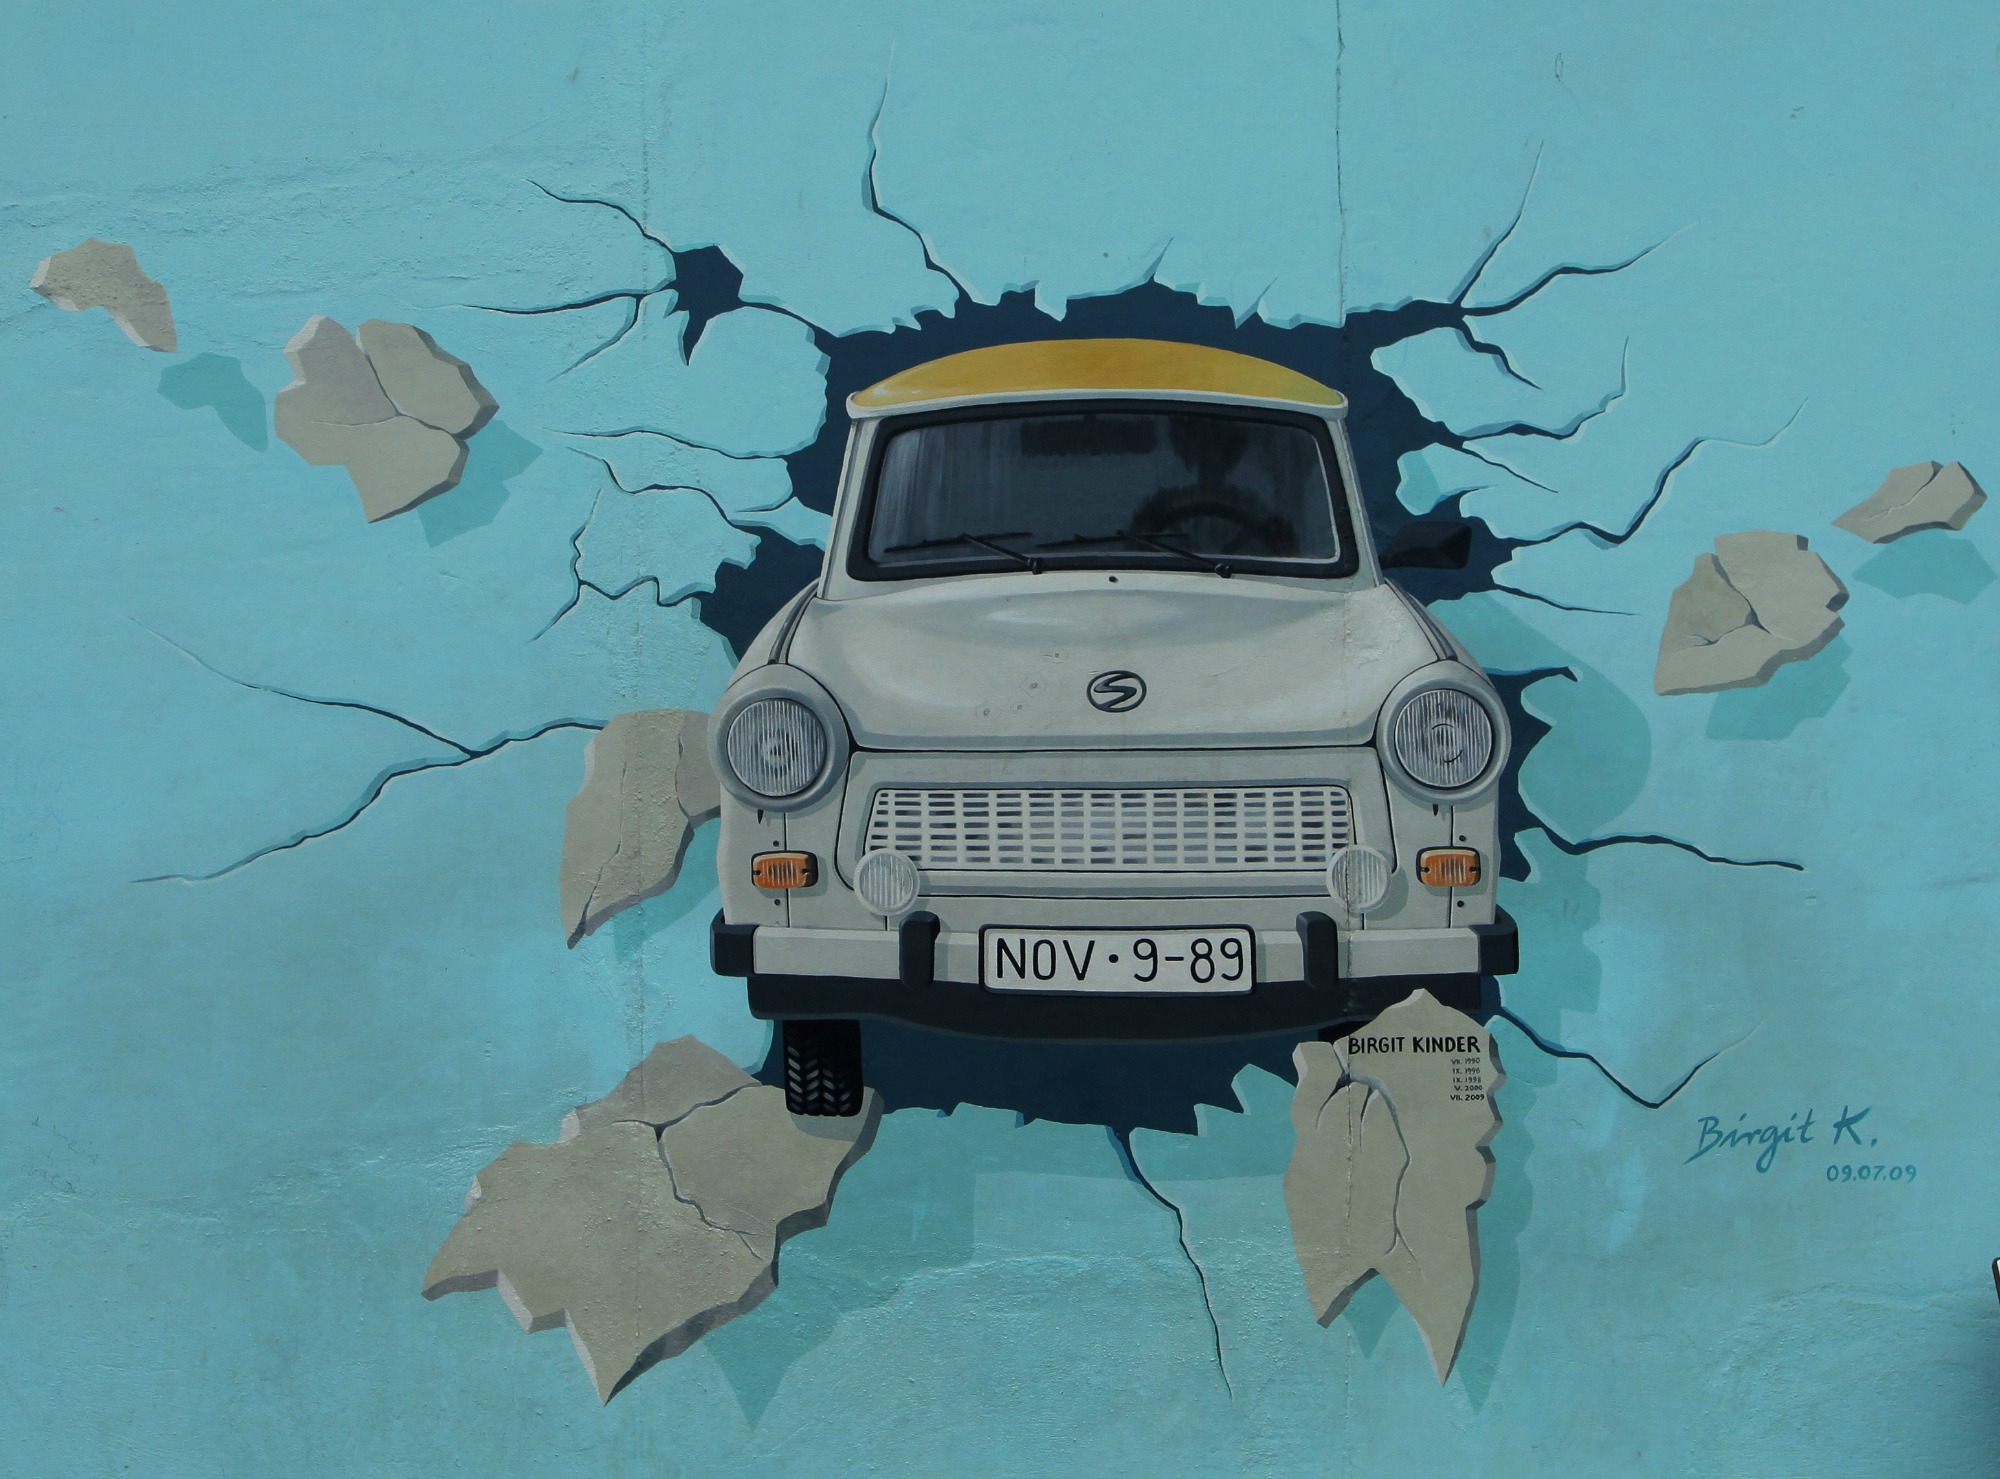 an11Berlin_Wall-Berlin-Berlin_Wall_graffiti_art-Mural-Trabant